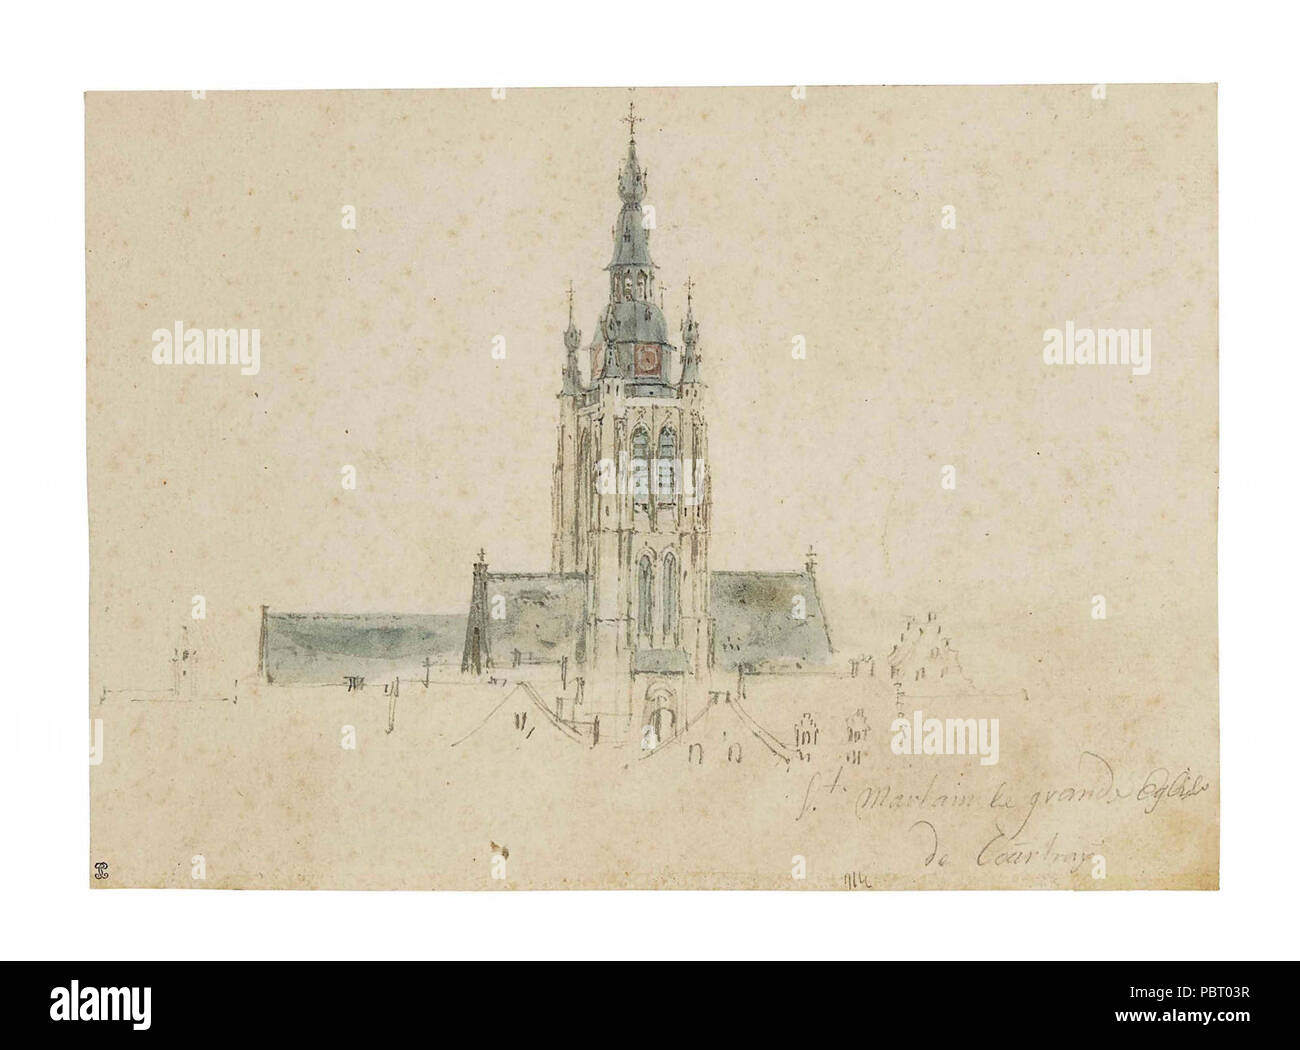 Adam Frans van der Meulen - Blick auf den Turm - Turm und Dach der Kirche St. Martin in Kortrijk. Stockfoto